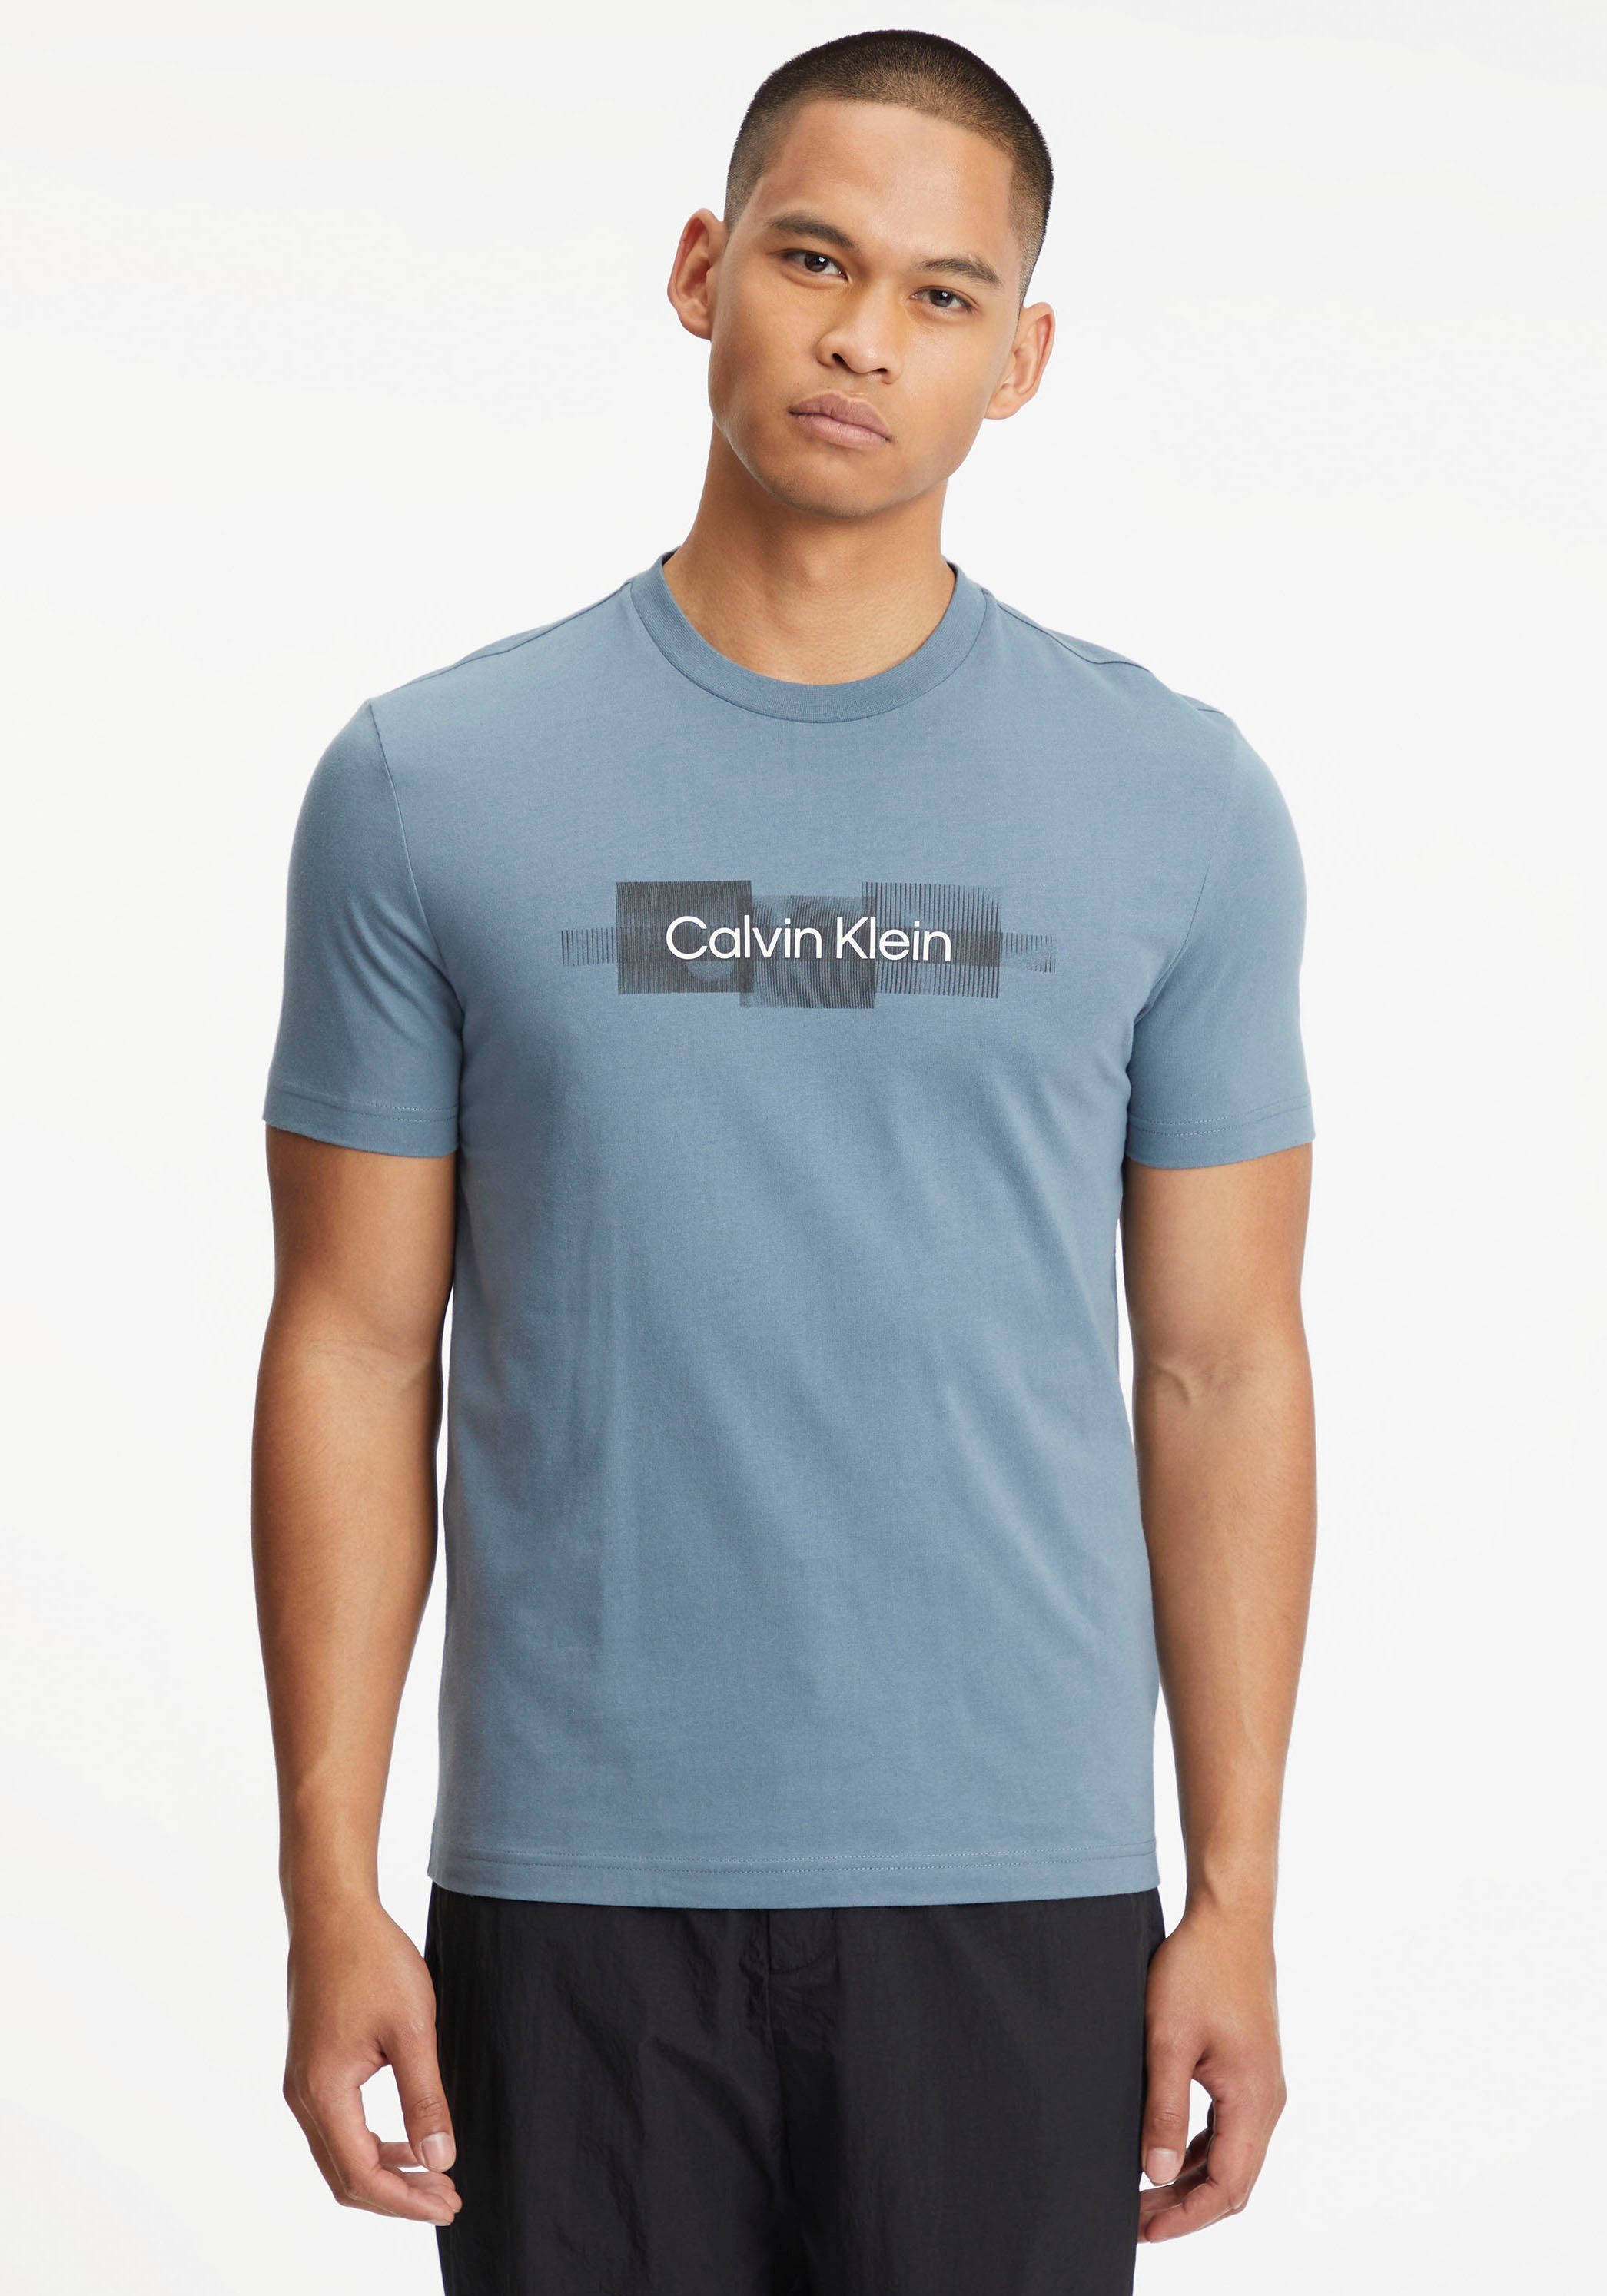 Baumwolle Tar BOX reiner T-SHIRT Klein T-Shirt LOGO STRIPED Grey Calvin aus